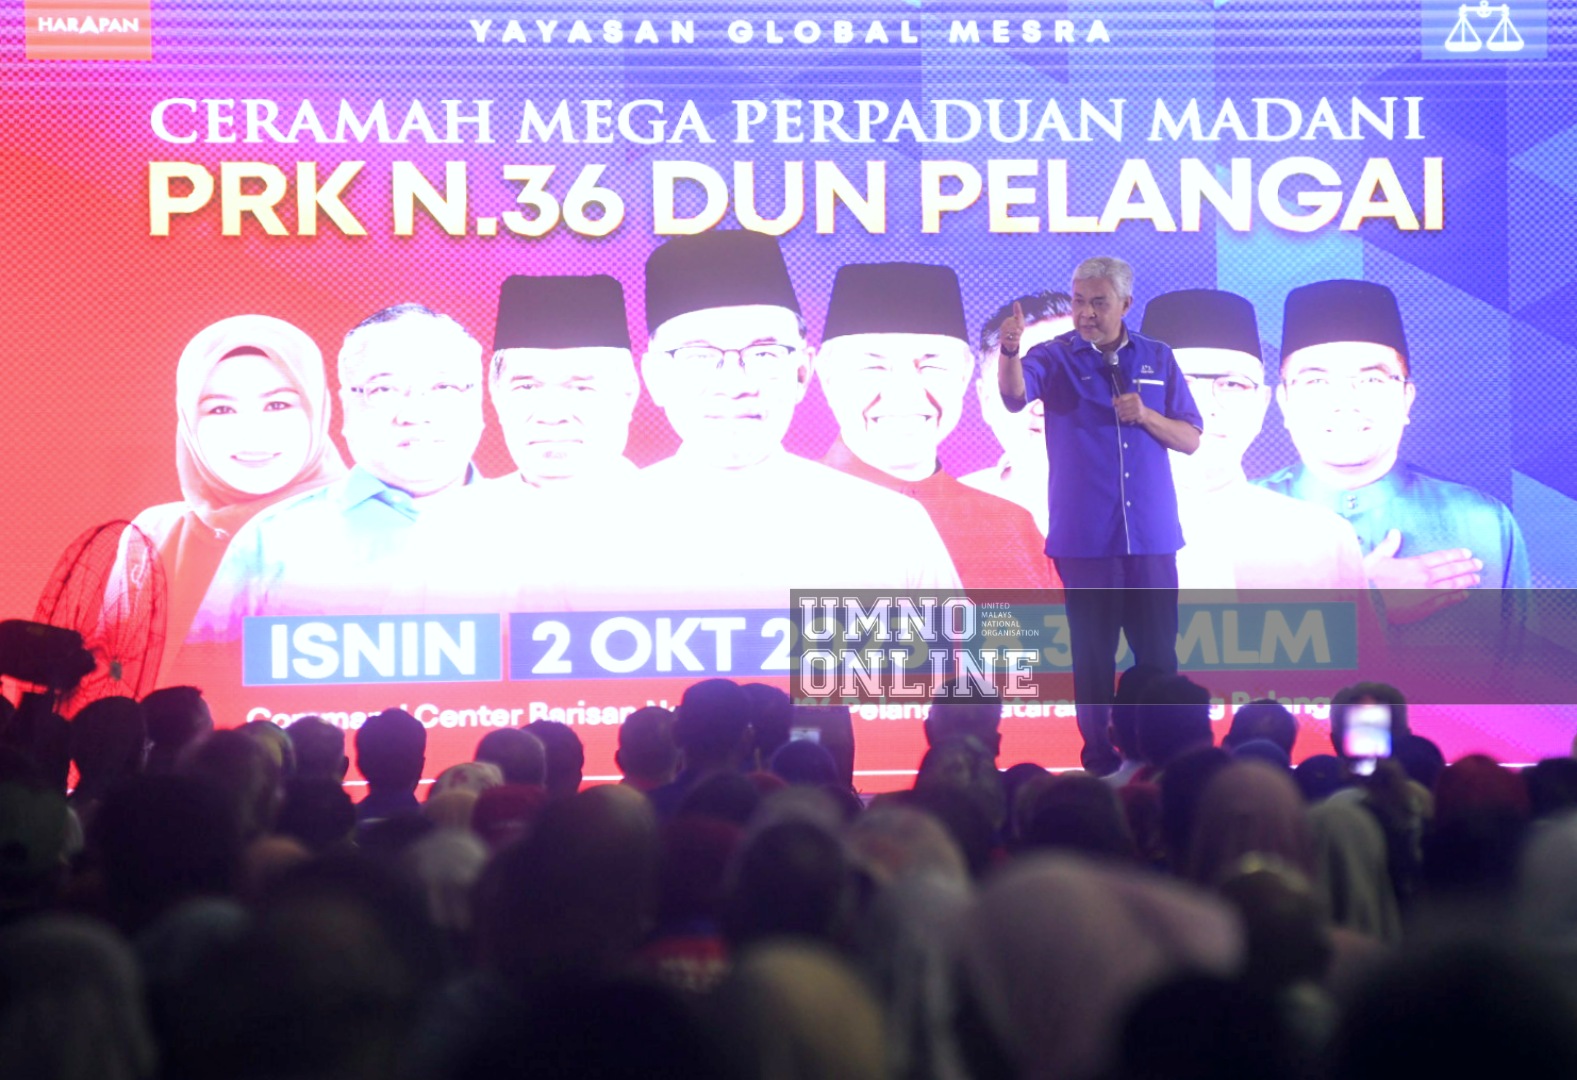 Ahmad Zahid Percaya Amizar Mampu Jadi Wakil Rakyat Pelangai